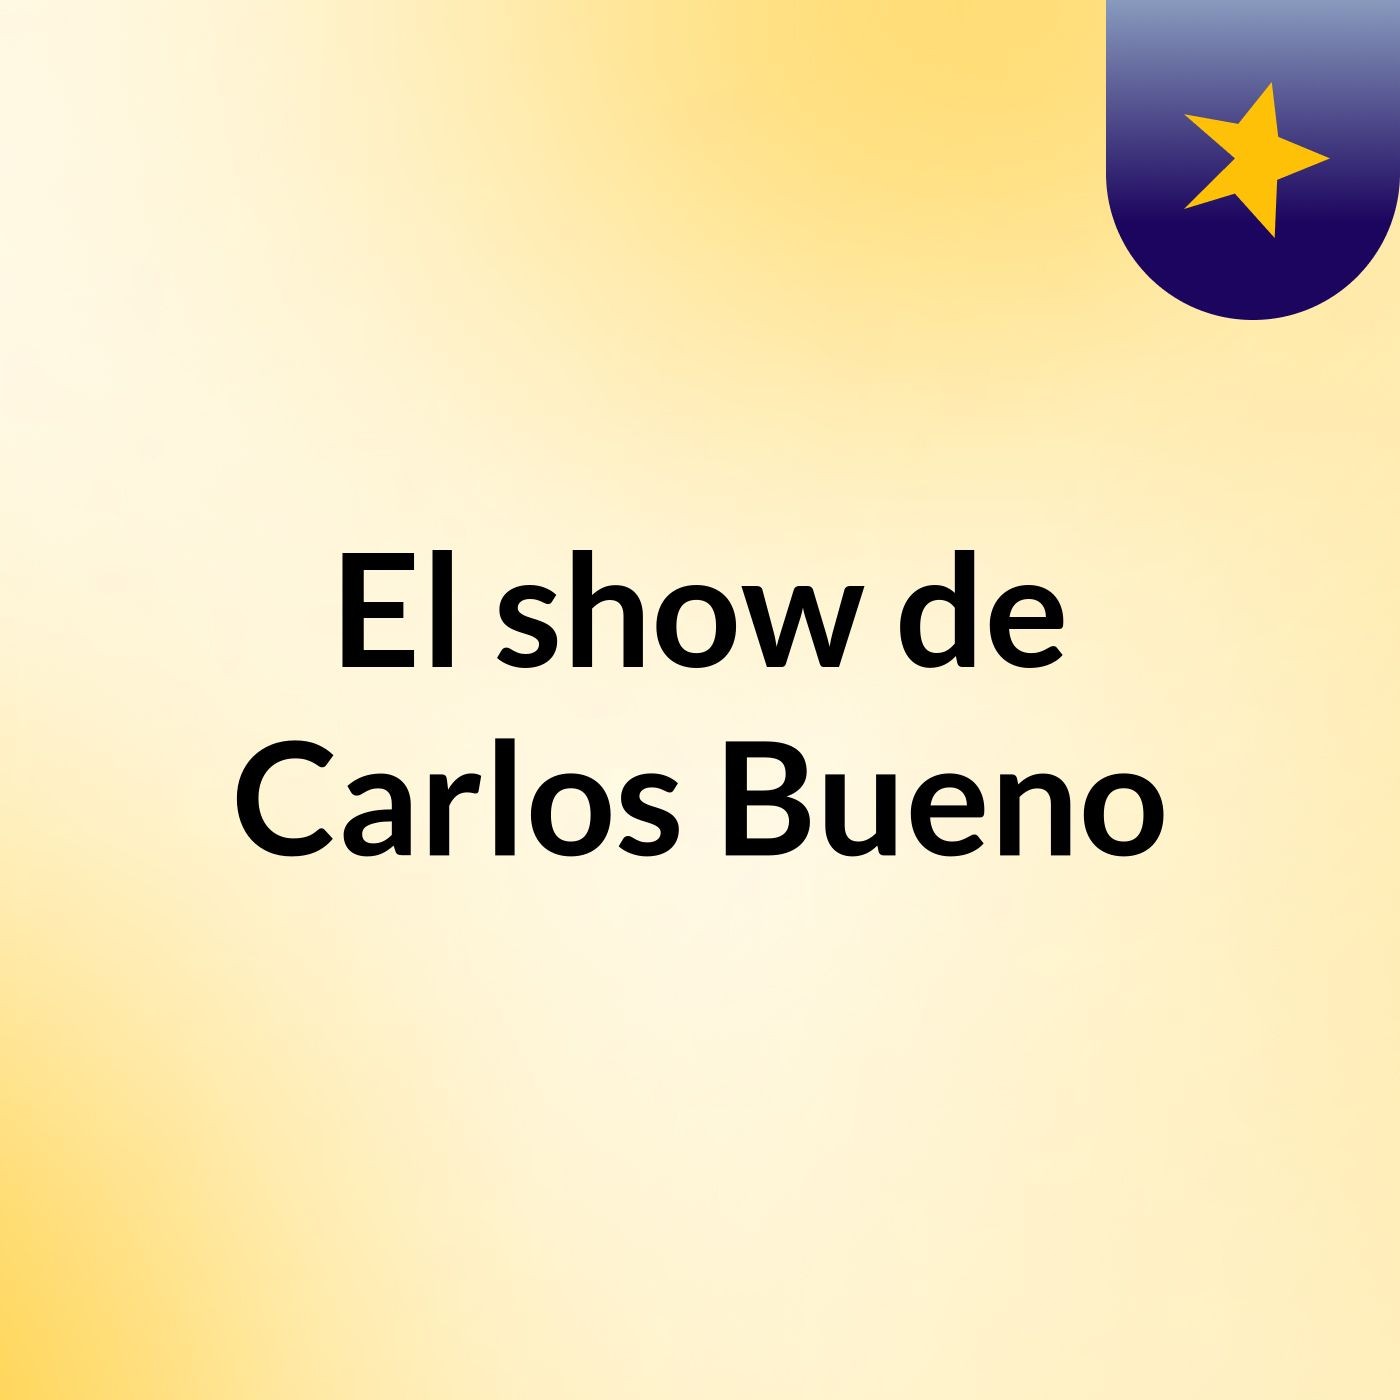 El show de Carlos Bueno